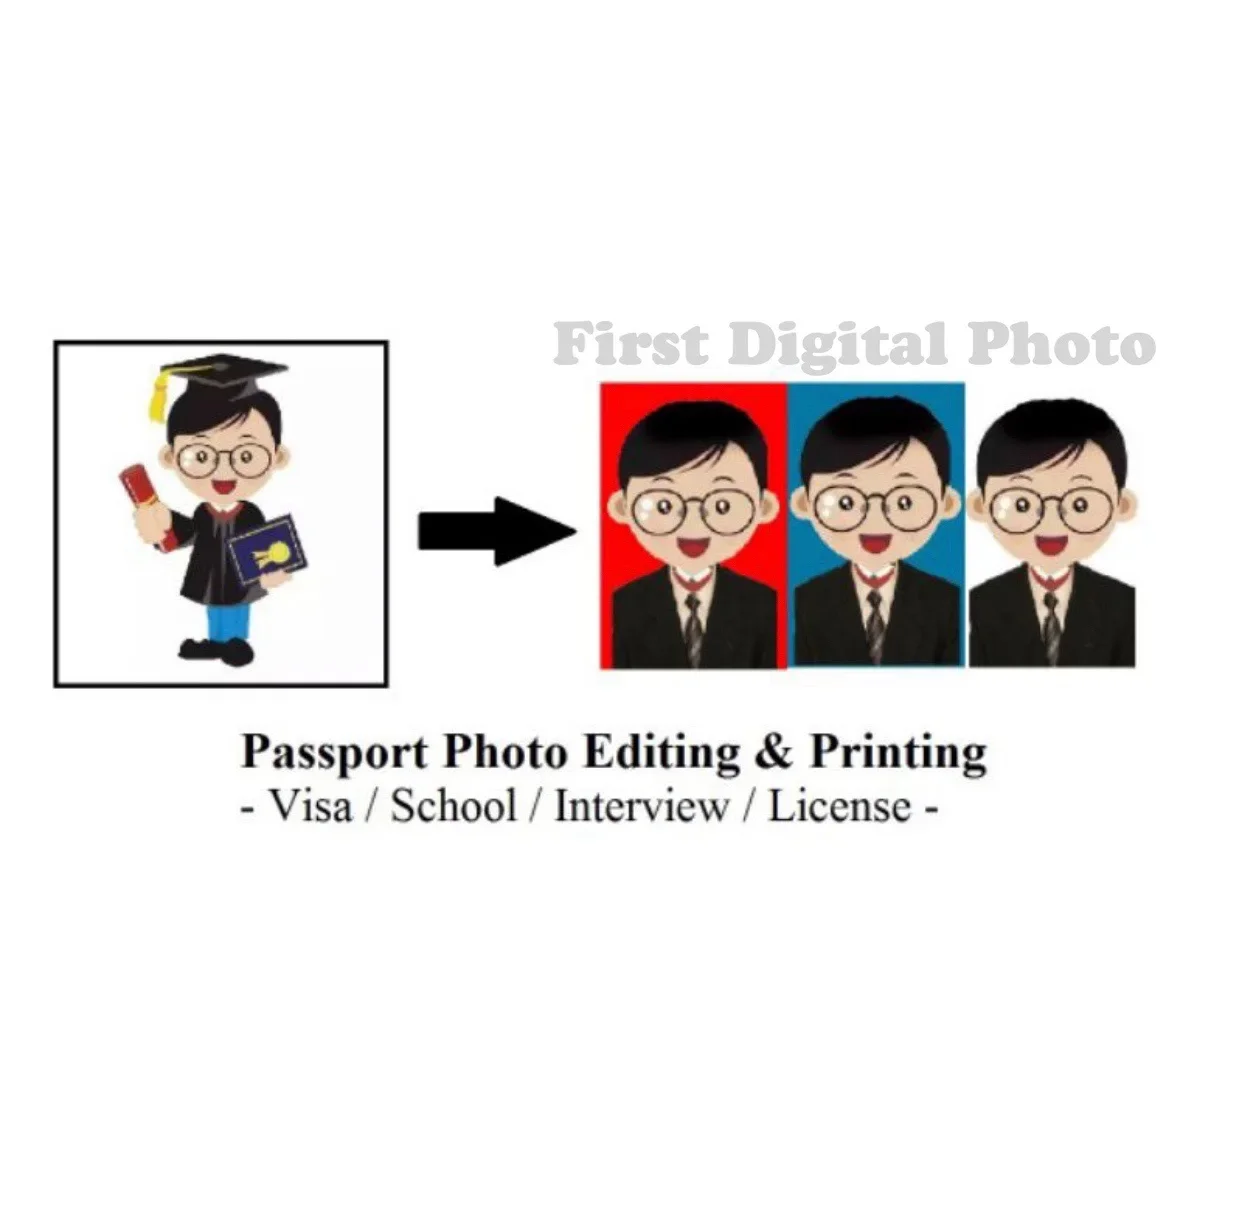 Gambar Passport / Passport Photo Editing & Printing